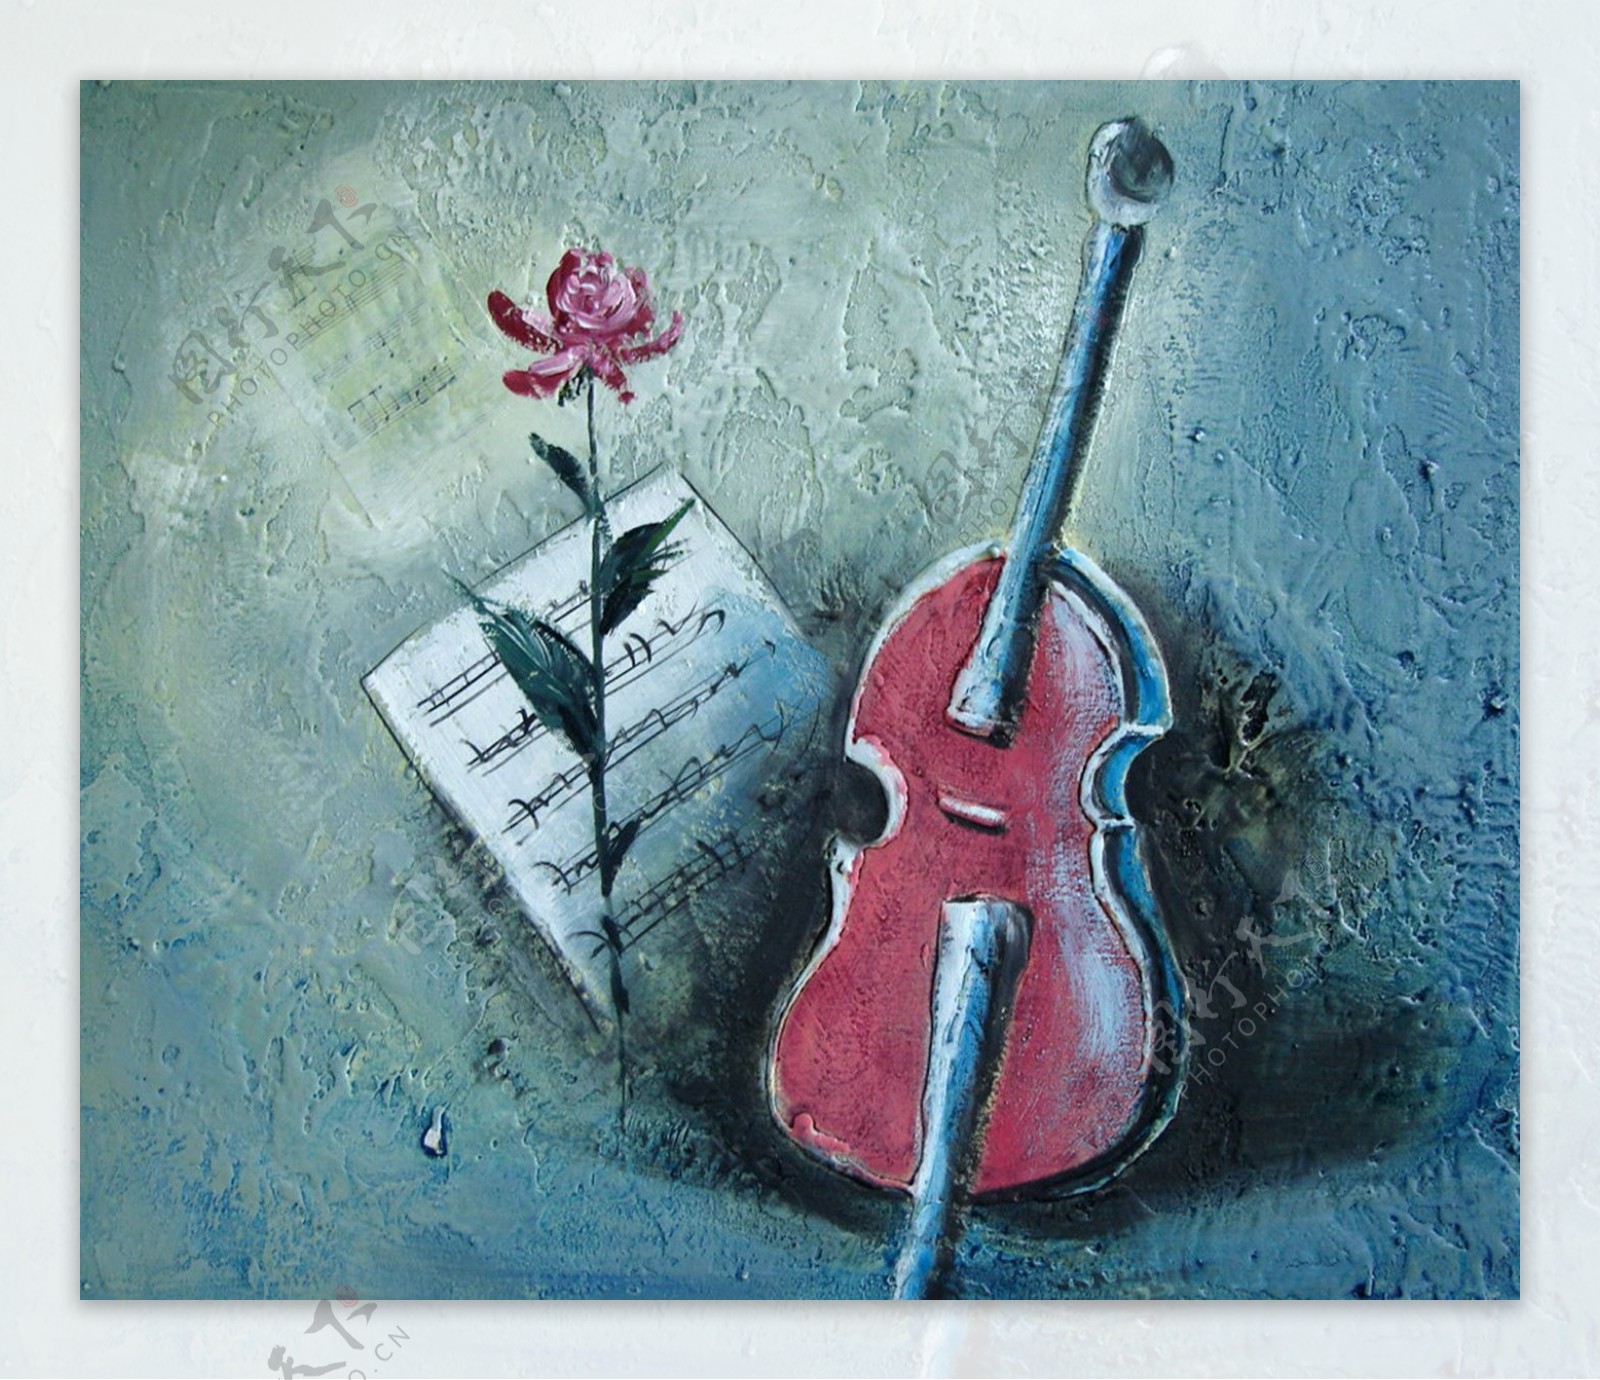 小提琴和琴谱油画